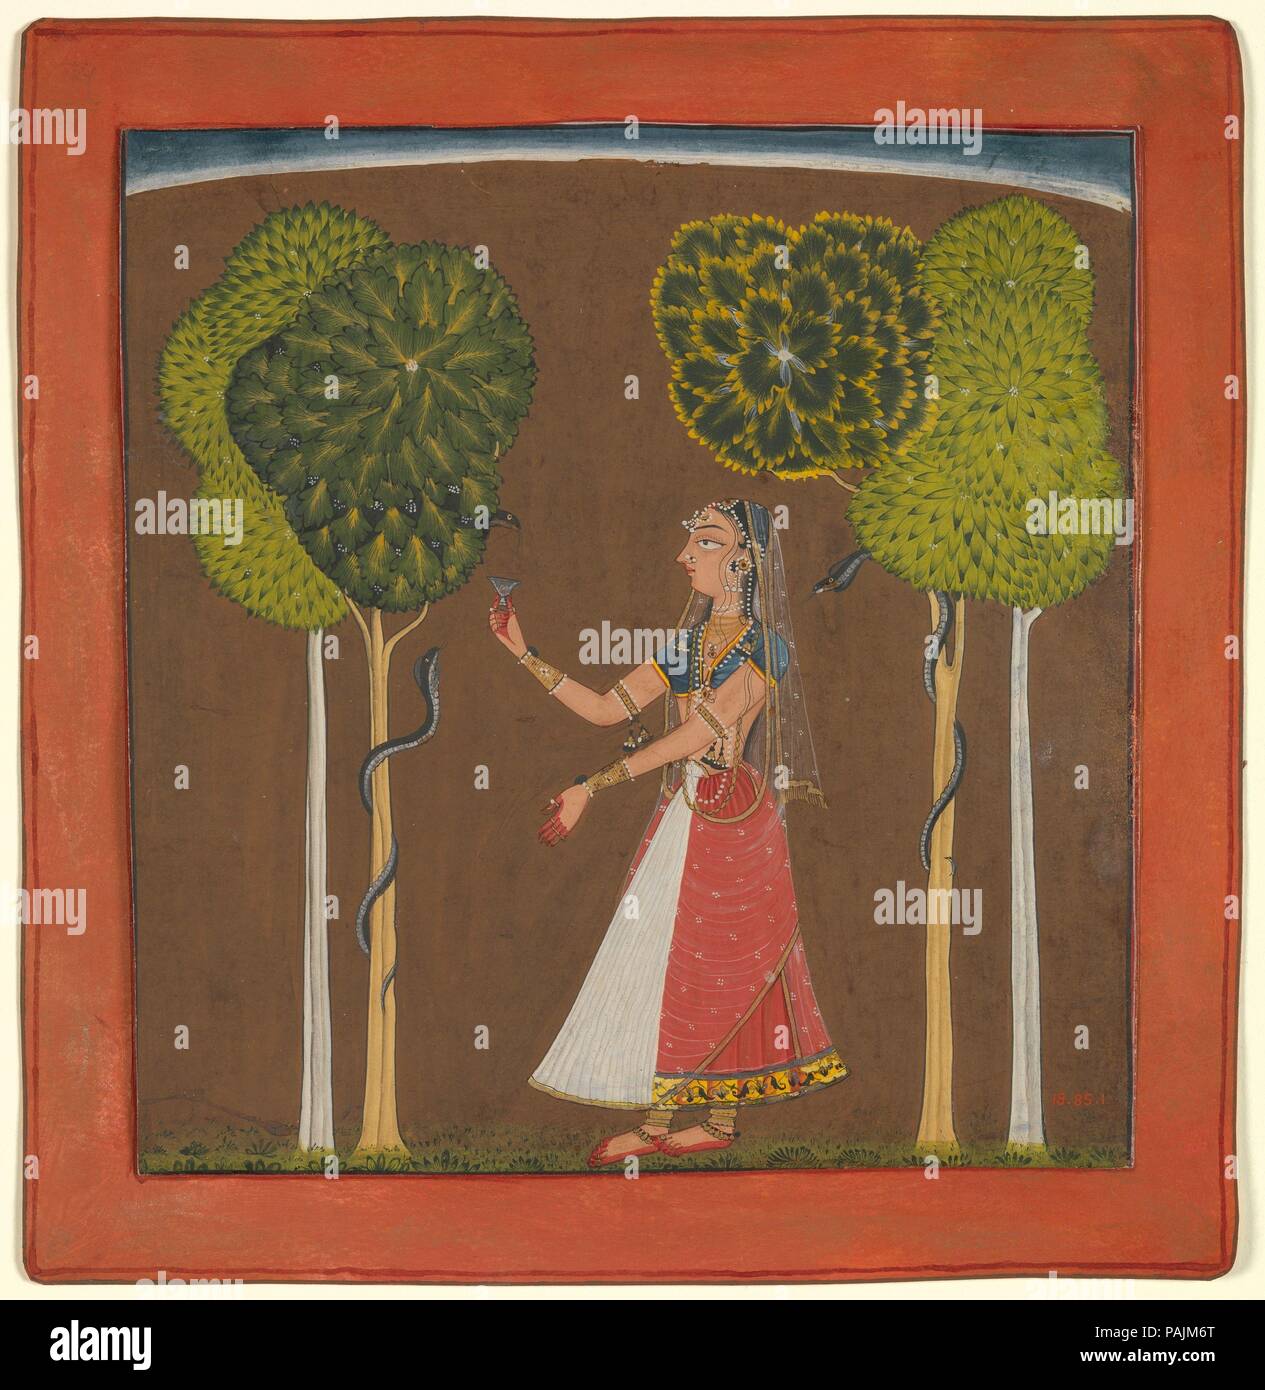 Ragini, möglicherweise Asavari: Folio aus einem Ragamala Serie. Kultur: Indien (Himachal Pradesh, mankot). Abmessungen: Bild: 7. X 6 5/8 in. (17,8 × 16,8 cm) Blatt: 8 3/8 x 8 1/8 in. (21,3 × 20,6 cm). Datum: Ca. 1700-1710. In dieser bildhafte Metapher für ein Raga (eine musikalische Phrase, die als Grundlage für die Improvisation verwendet wird), eine Dame bezaubert den Schlangen entwining die angrenzenden Bäume. Der Baum Motive Rahmen die junge Frau, gegen eine monochromatische Boden mit gewölbter Skyline gesehen, gestikulierend zu den Schlangen, die auf ihre Bewegungen reagiert. In einem verwandten Thema, die Abhiri Ragini, die Frau versorgt die Schlangen Milch fr Stockfoto